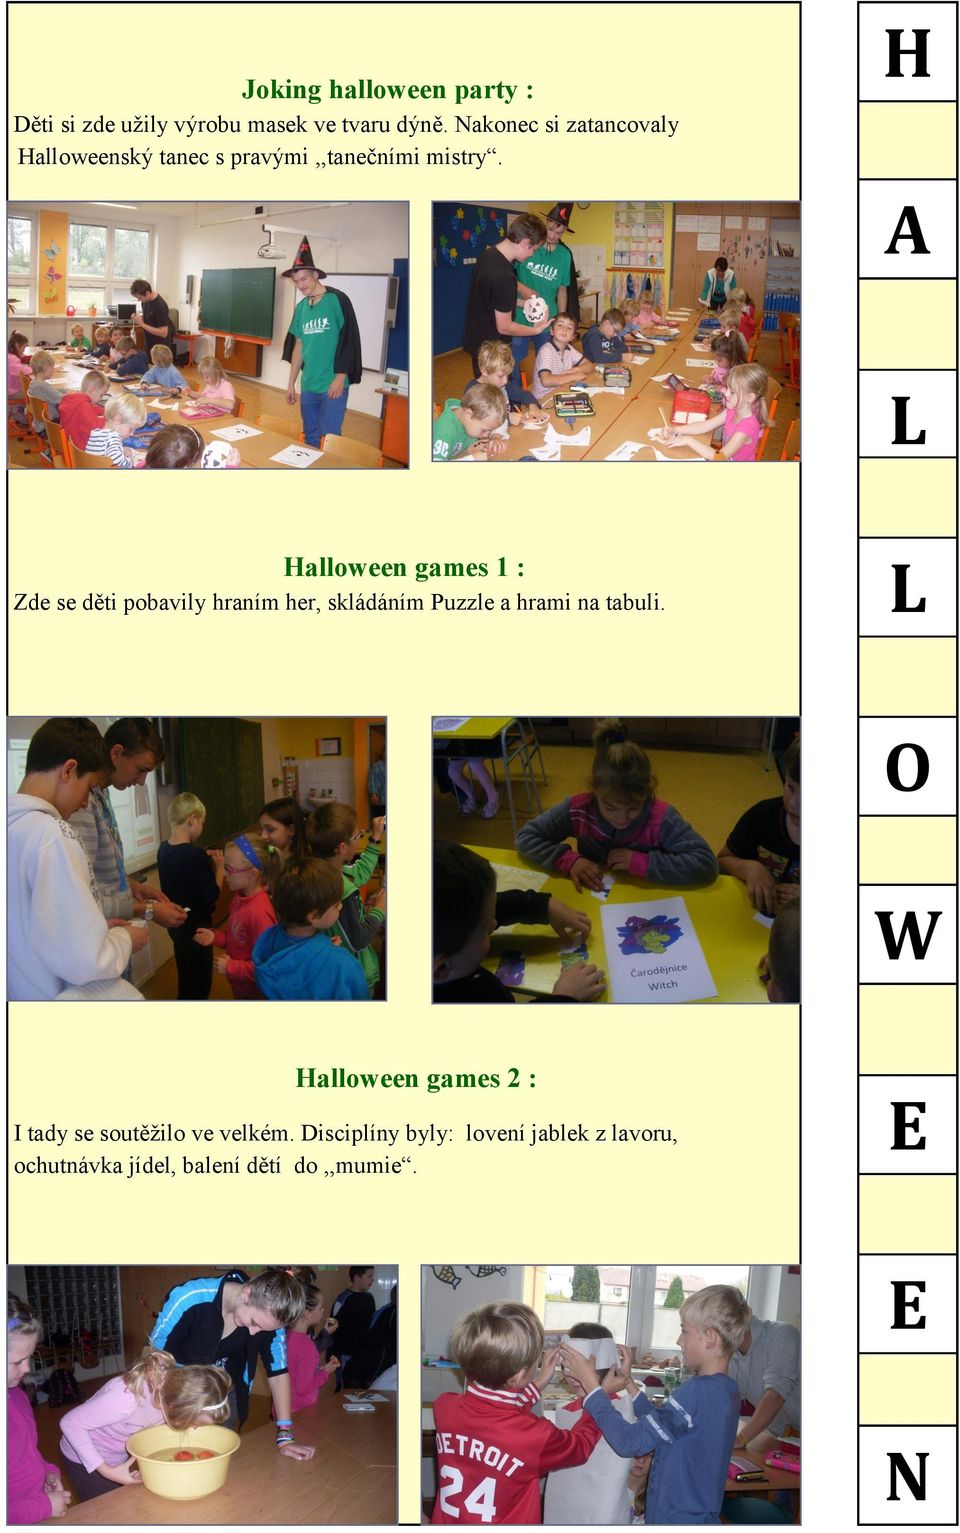 A L Halloween games 1 : Zde se děti pobavily hraním her, skládáním Puzzle a hrami na tabuli.